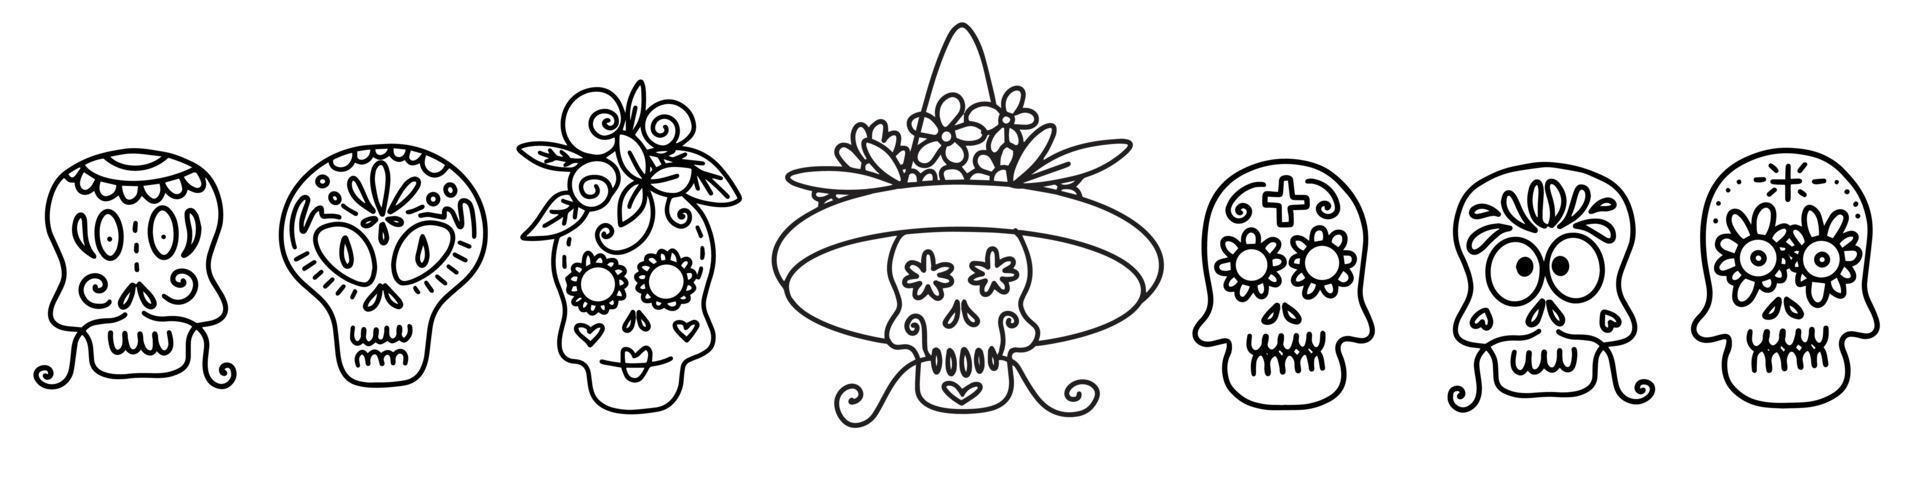 coleção de ilustrações lineares vetoriais de crânios decorados de diferentes tipos vetor